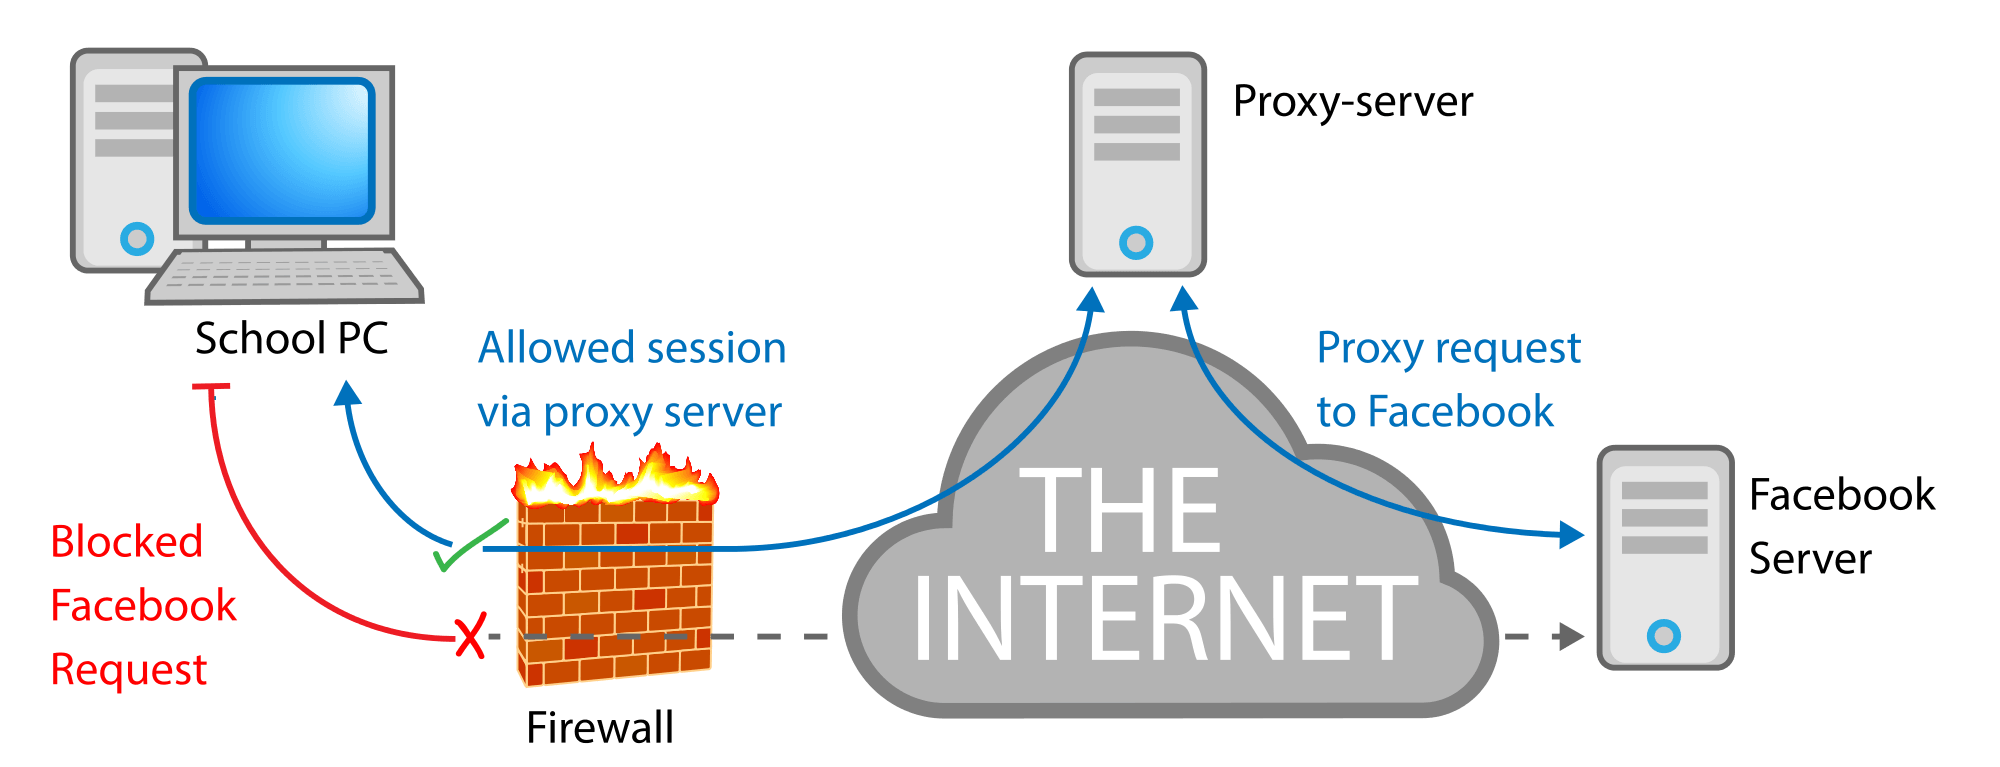 Купить http proxy. Прокси. Прокси сервер. Proksil Server. Прокси сервер сервер интернет.